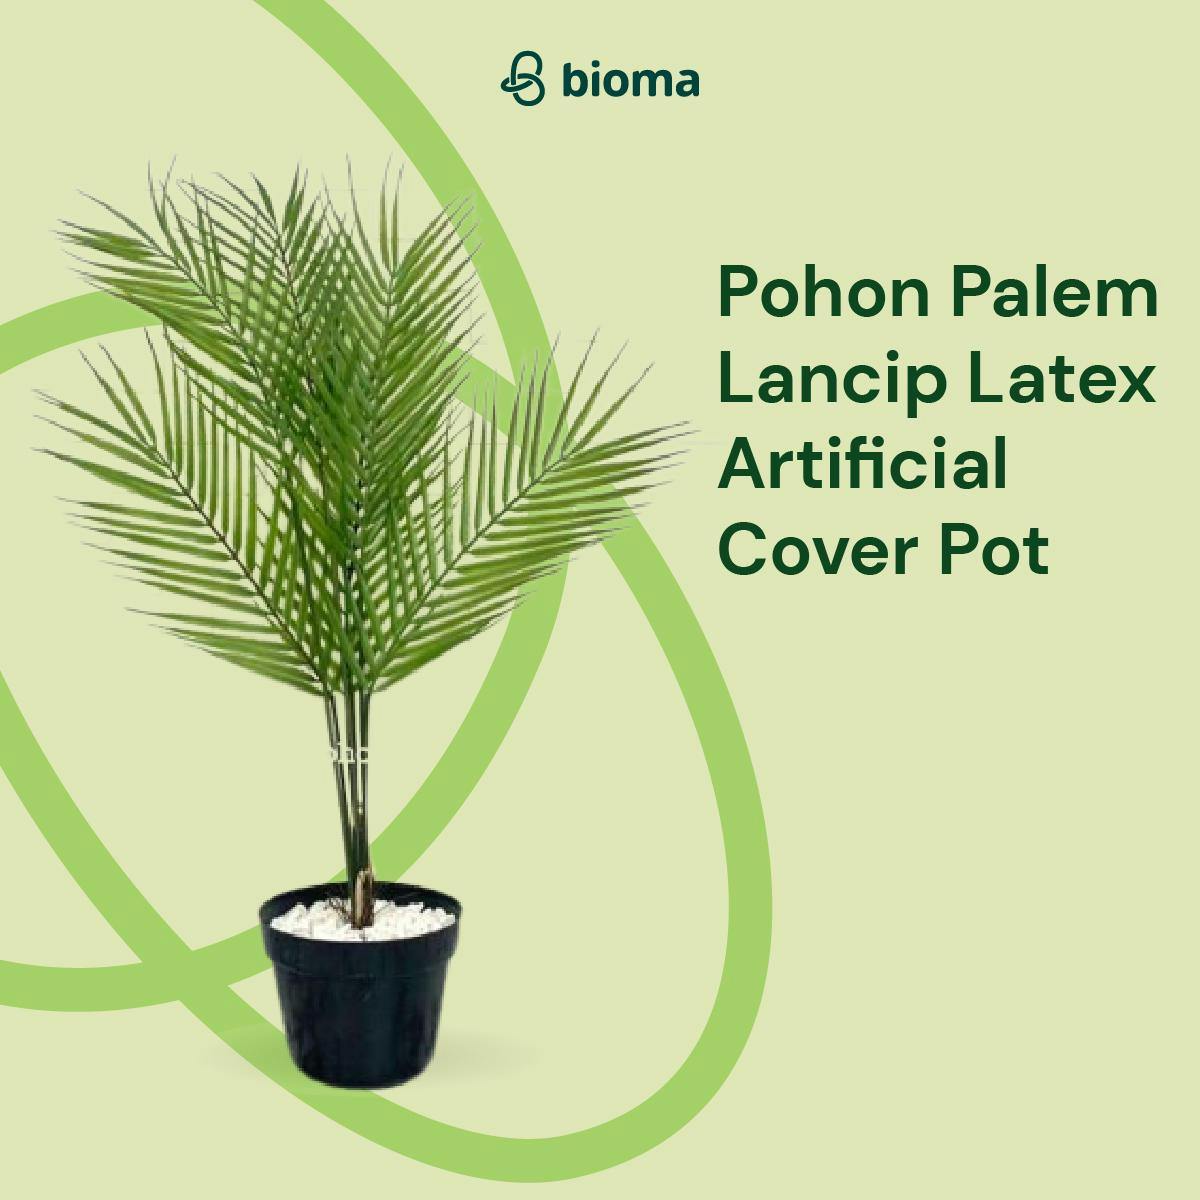 Pohon Palem Lancip Latex Artificial Cover Pot